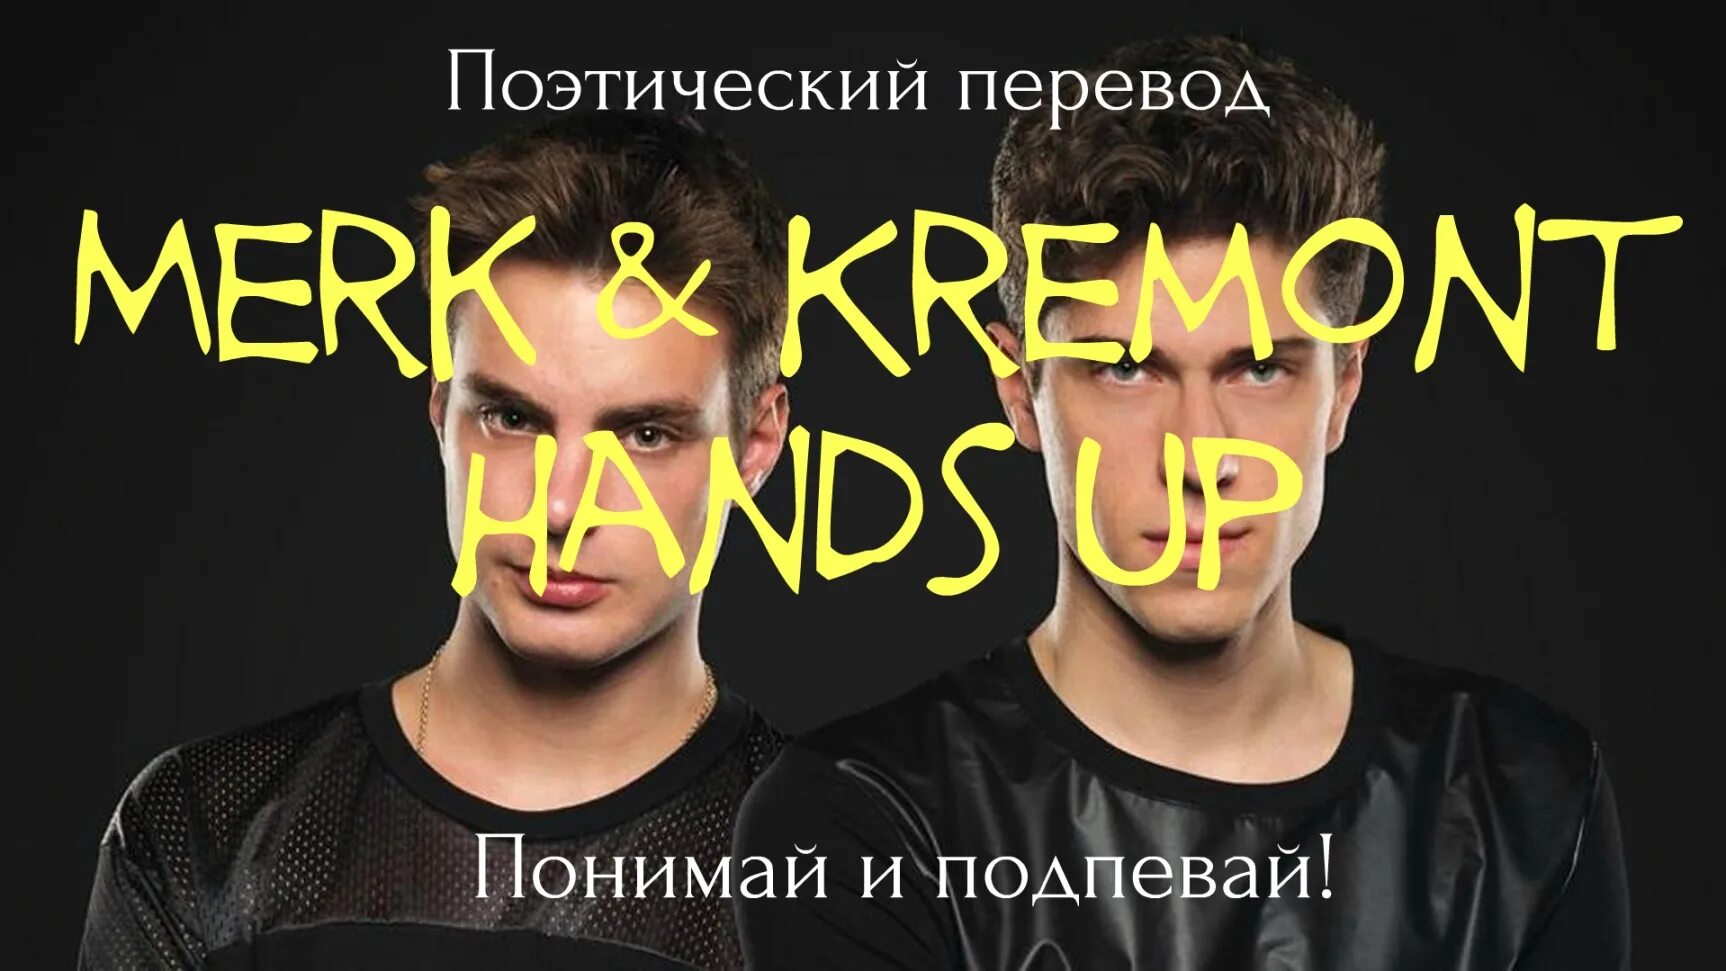 Merk Kremont hands. Hands up перевод. Hands up merk Kremont. Hands up на русском.